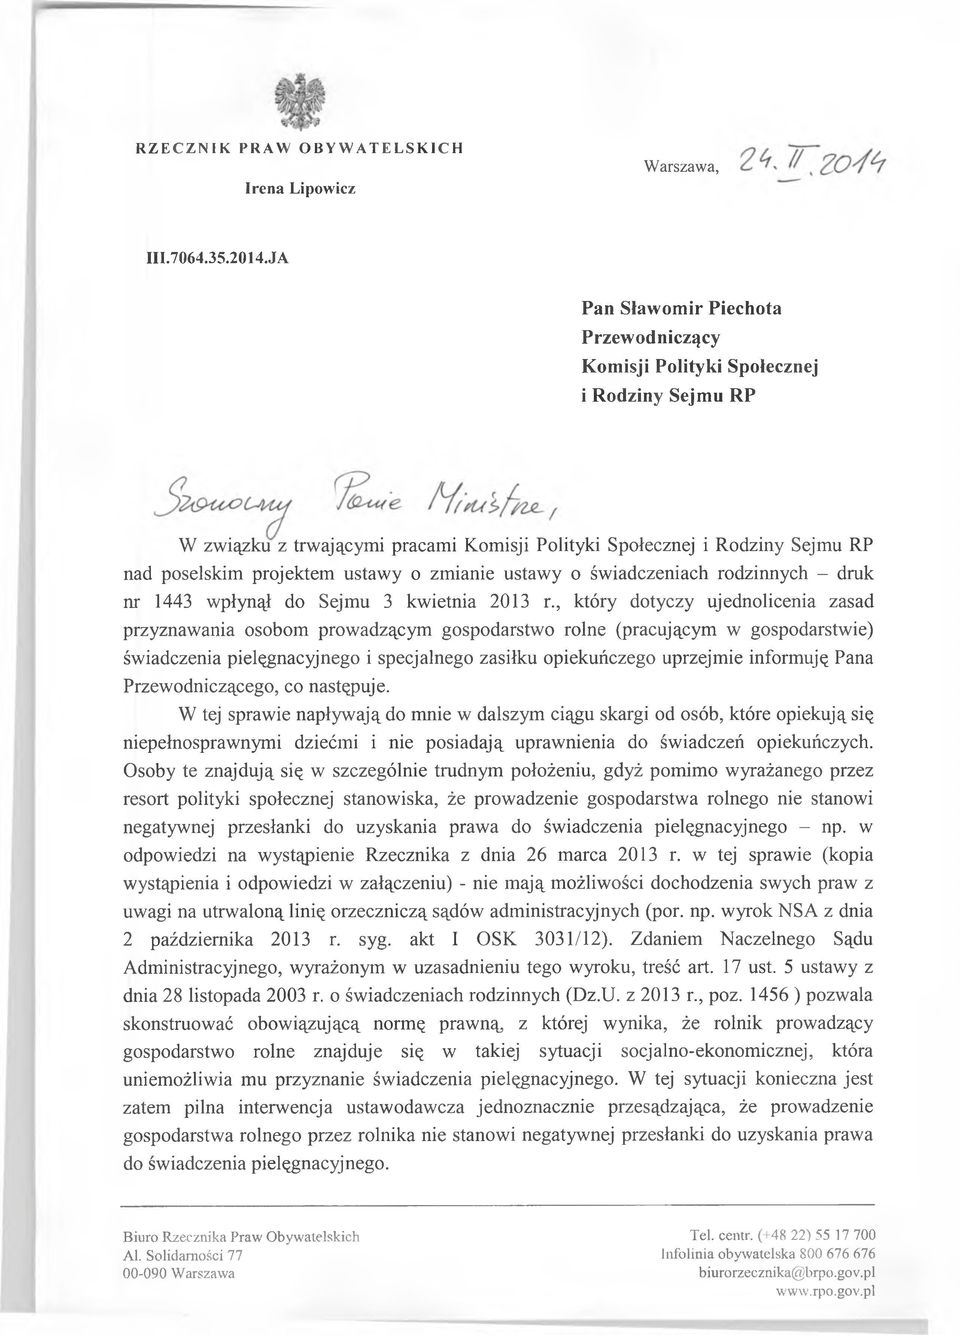 o zmianie ustawy o świadczeniach rodzinnych - druk nr 1443 wpłynął do Sejmu 3 kwietnia 2013 r.